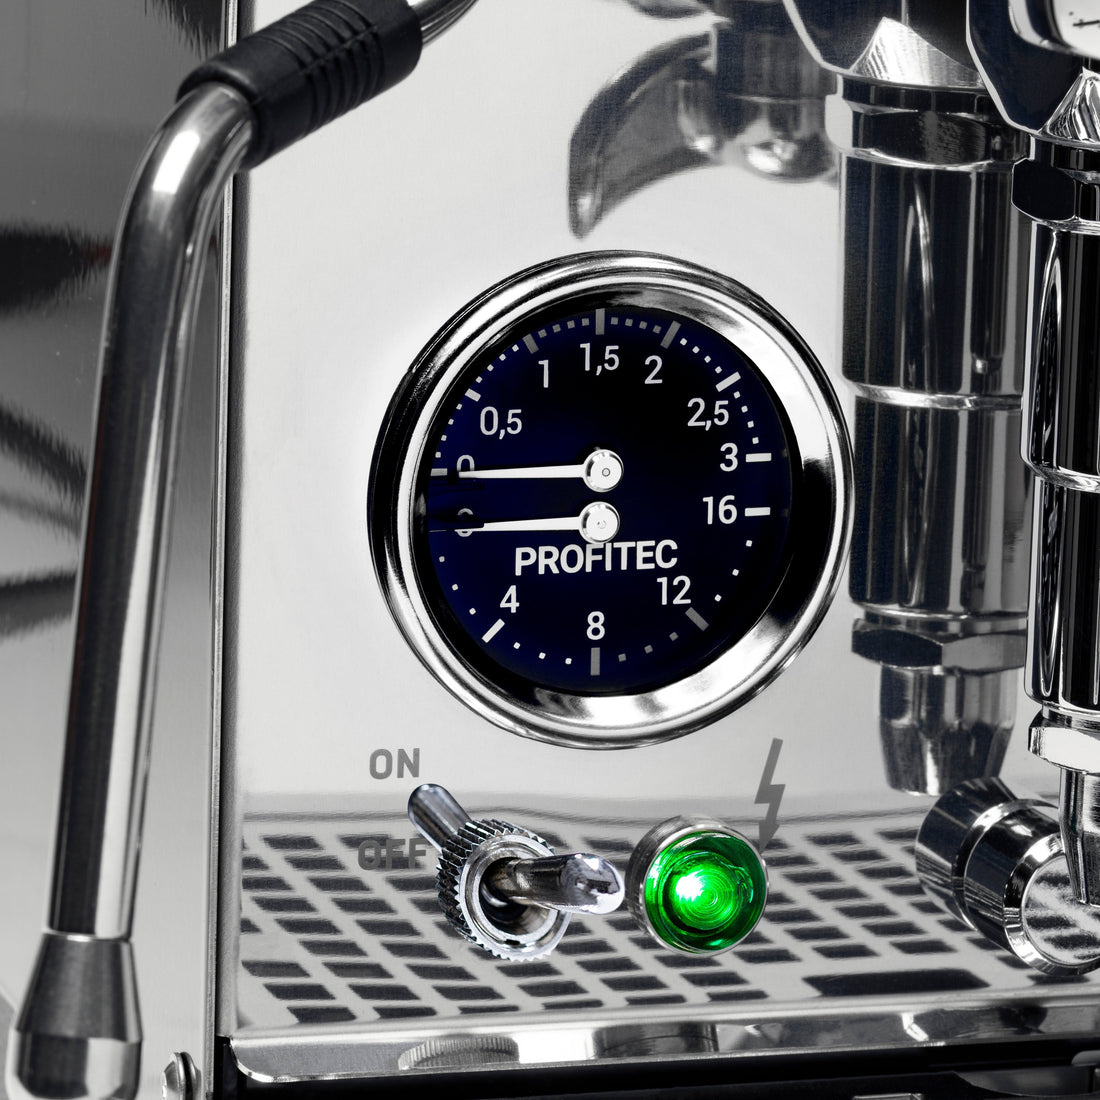 Profitec Pro 400 Espresso Machine in Matte White with Flow Control